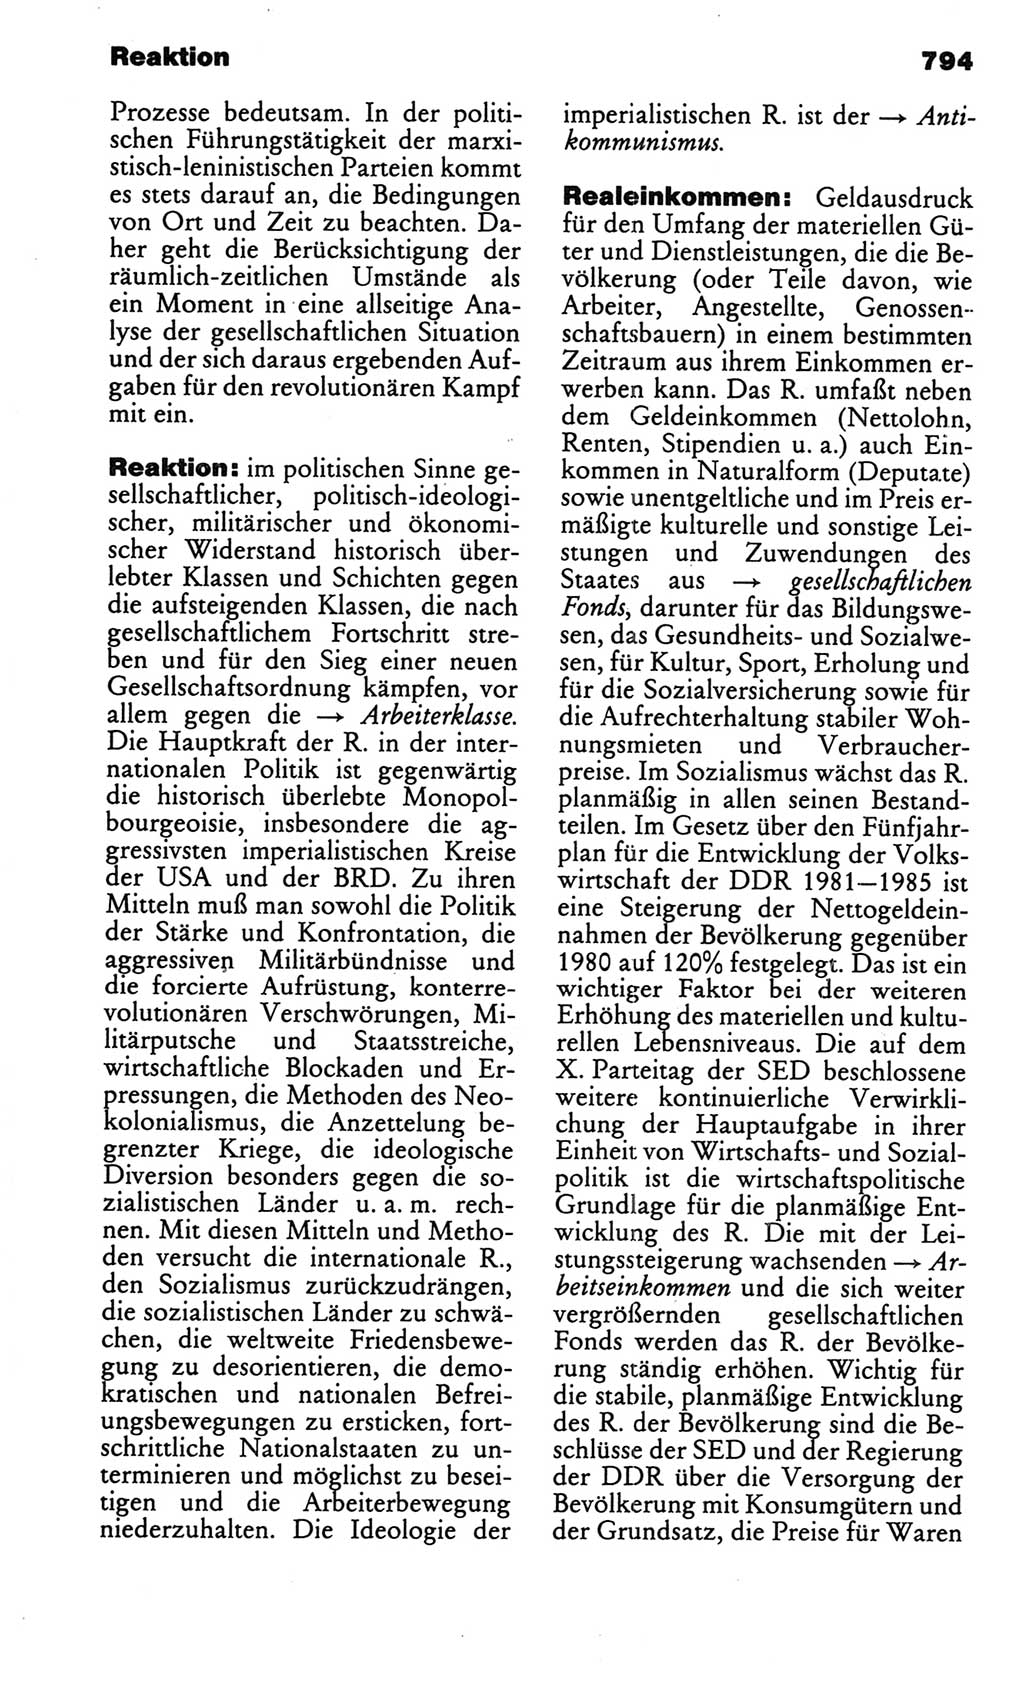 Kleines politisches Wörterbuch [Deutsche Demokratische Republik (DDR)] 1986, Seite 794 (Kl. pol. Wb. DDR 1986, S. 794)